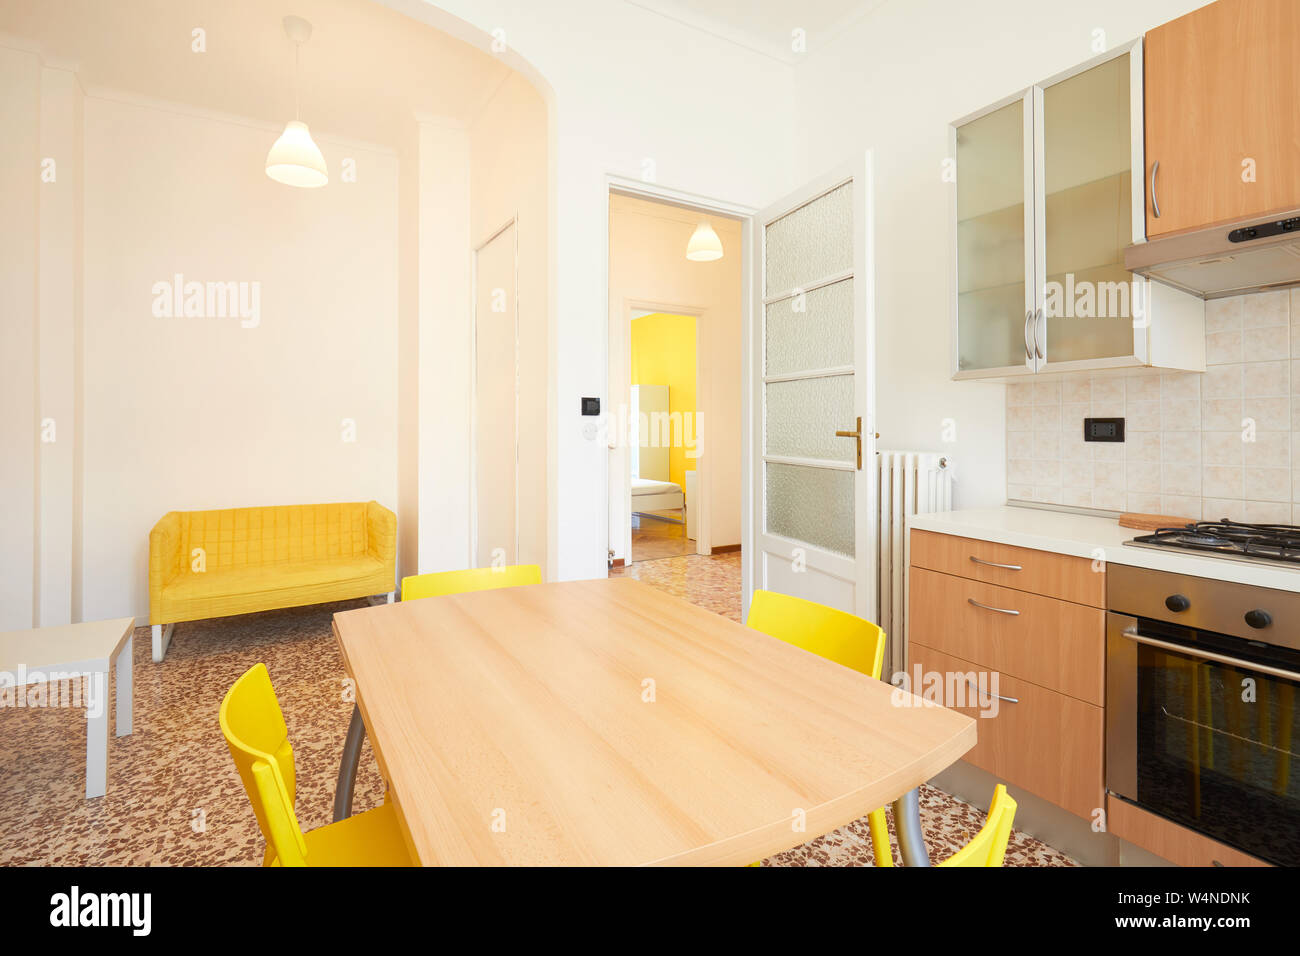 Weiße Küche Innenraum renoviert, geräumige Apartment zum mieten Stockfoto